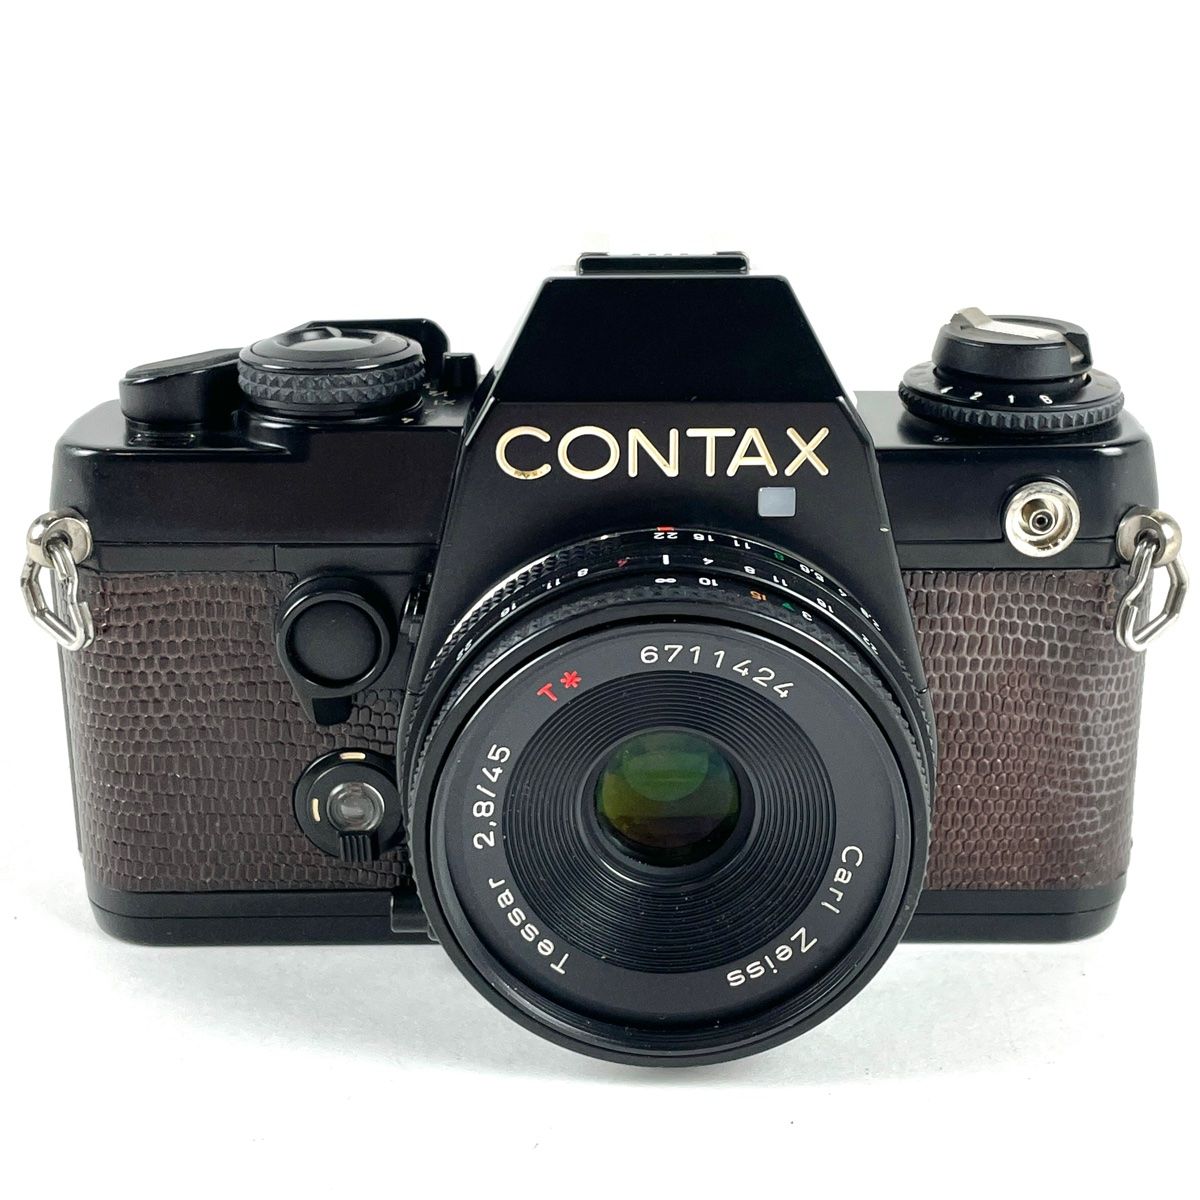 CONTAX 139 Quarts Zeiss Tessar 45mm F2.8